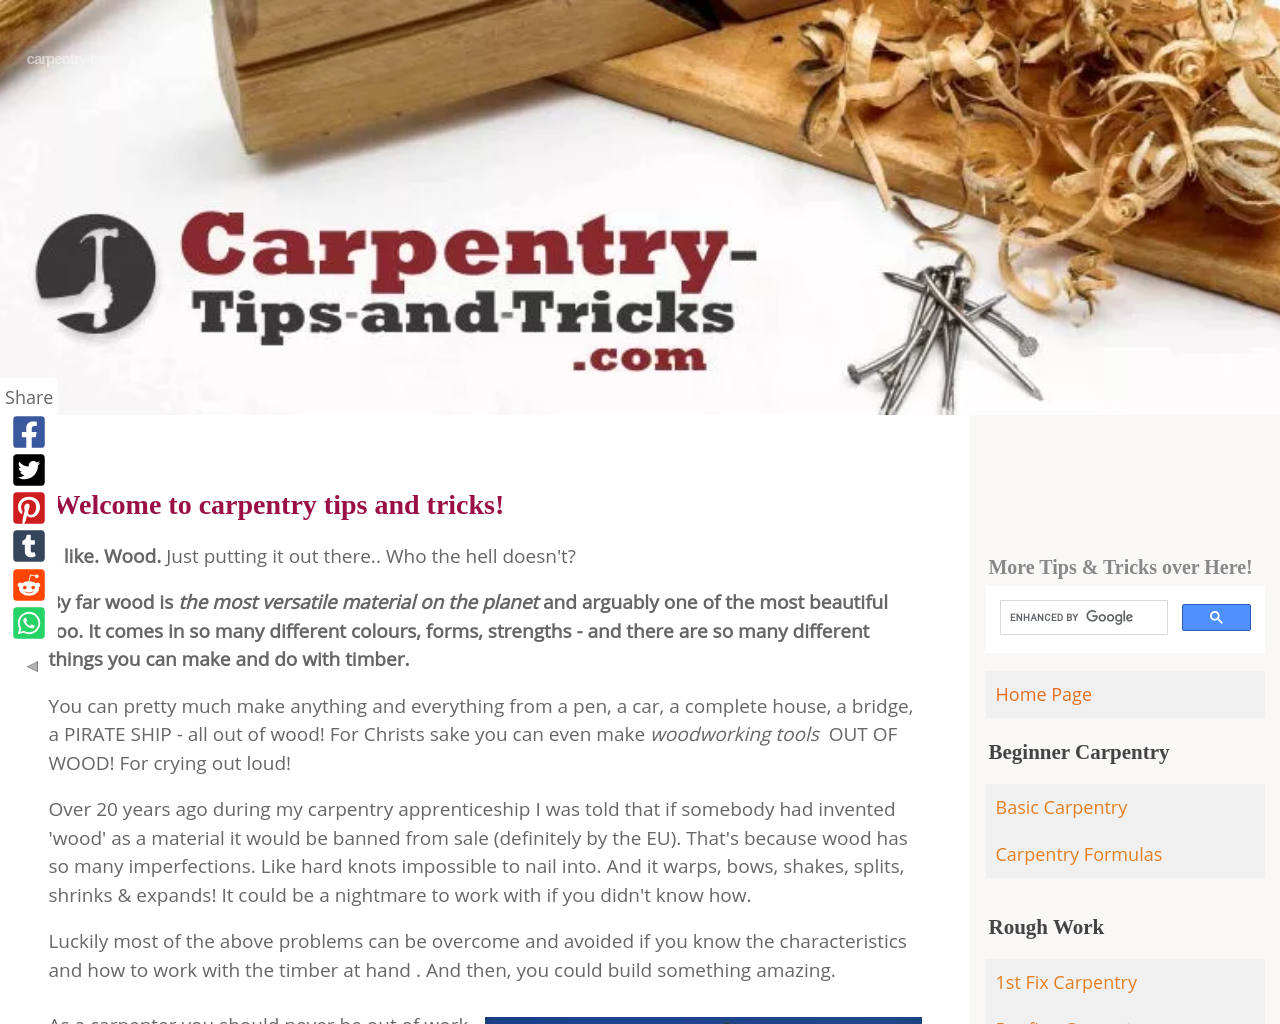 carpentry-tips-and-tricks.com